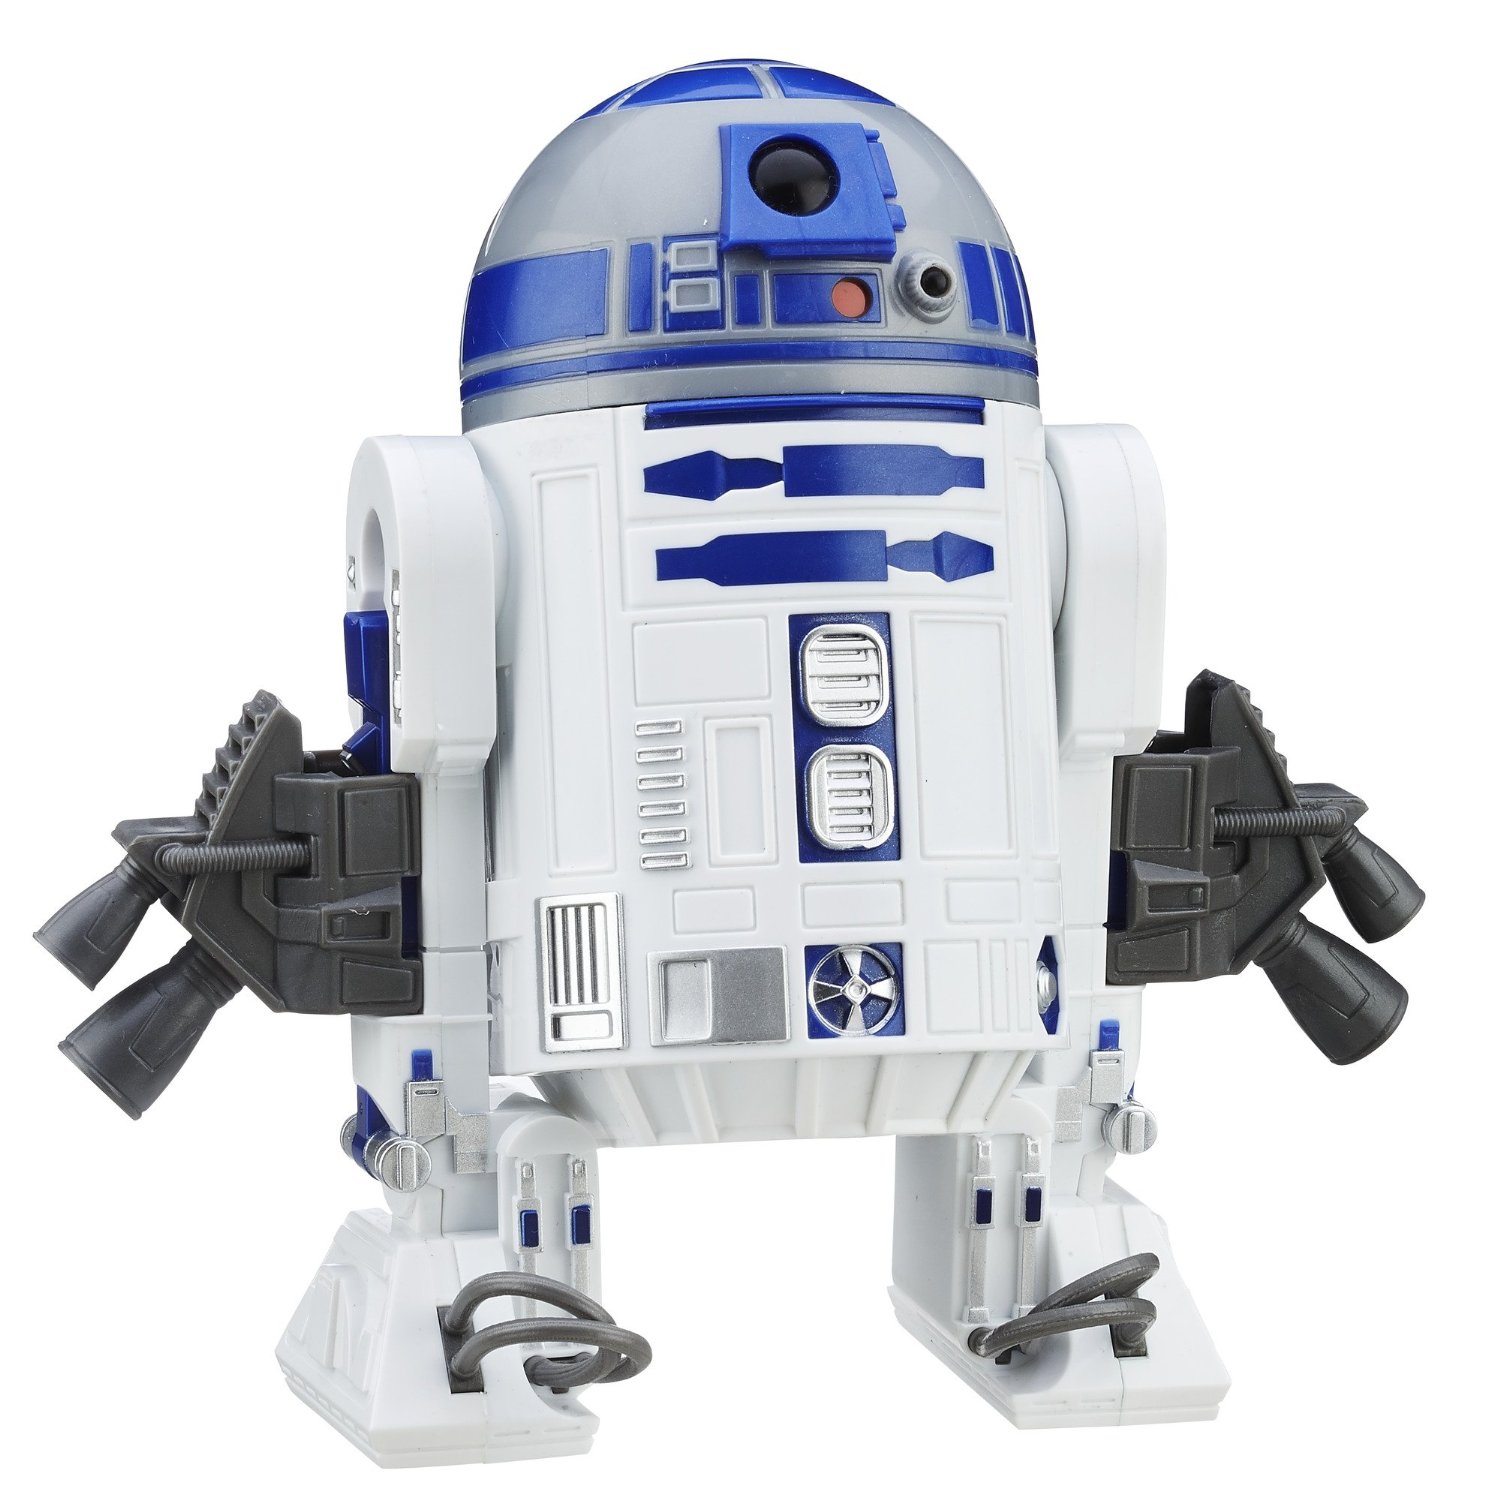 12" R2-D2 action figure 3